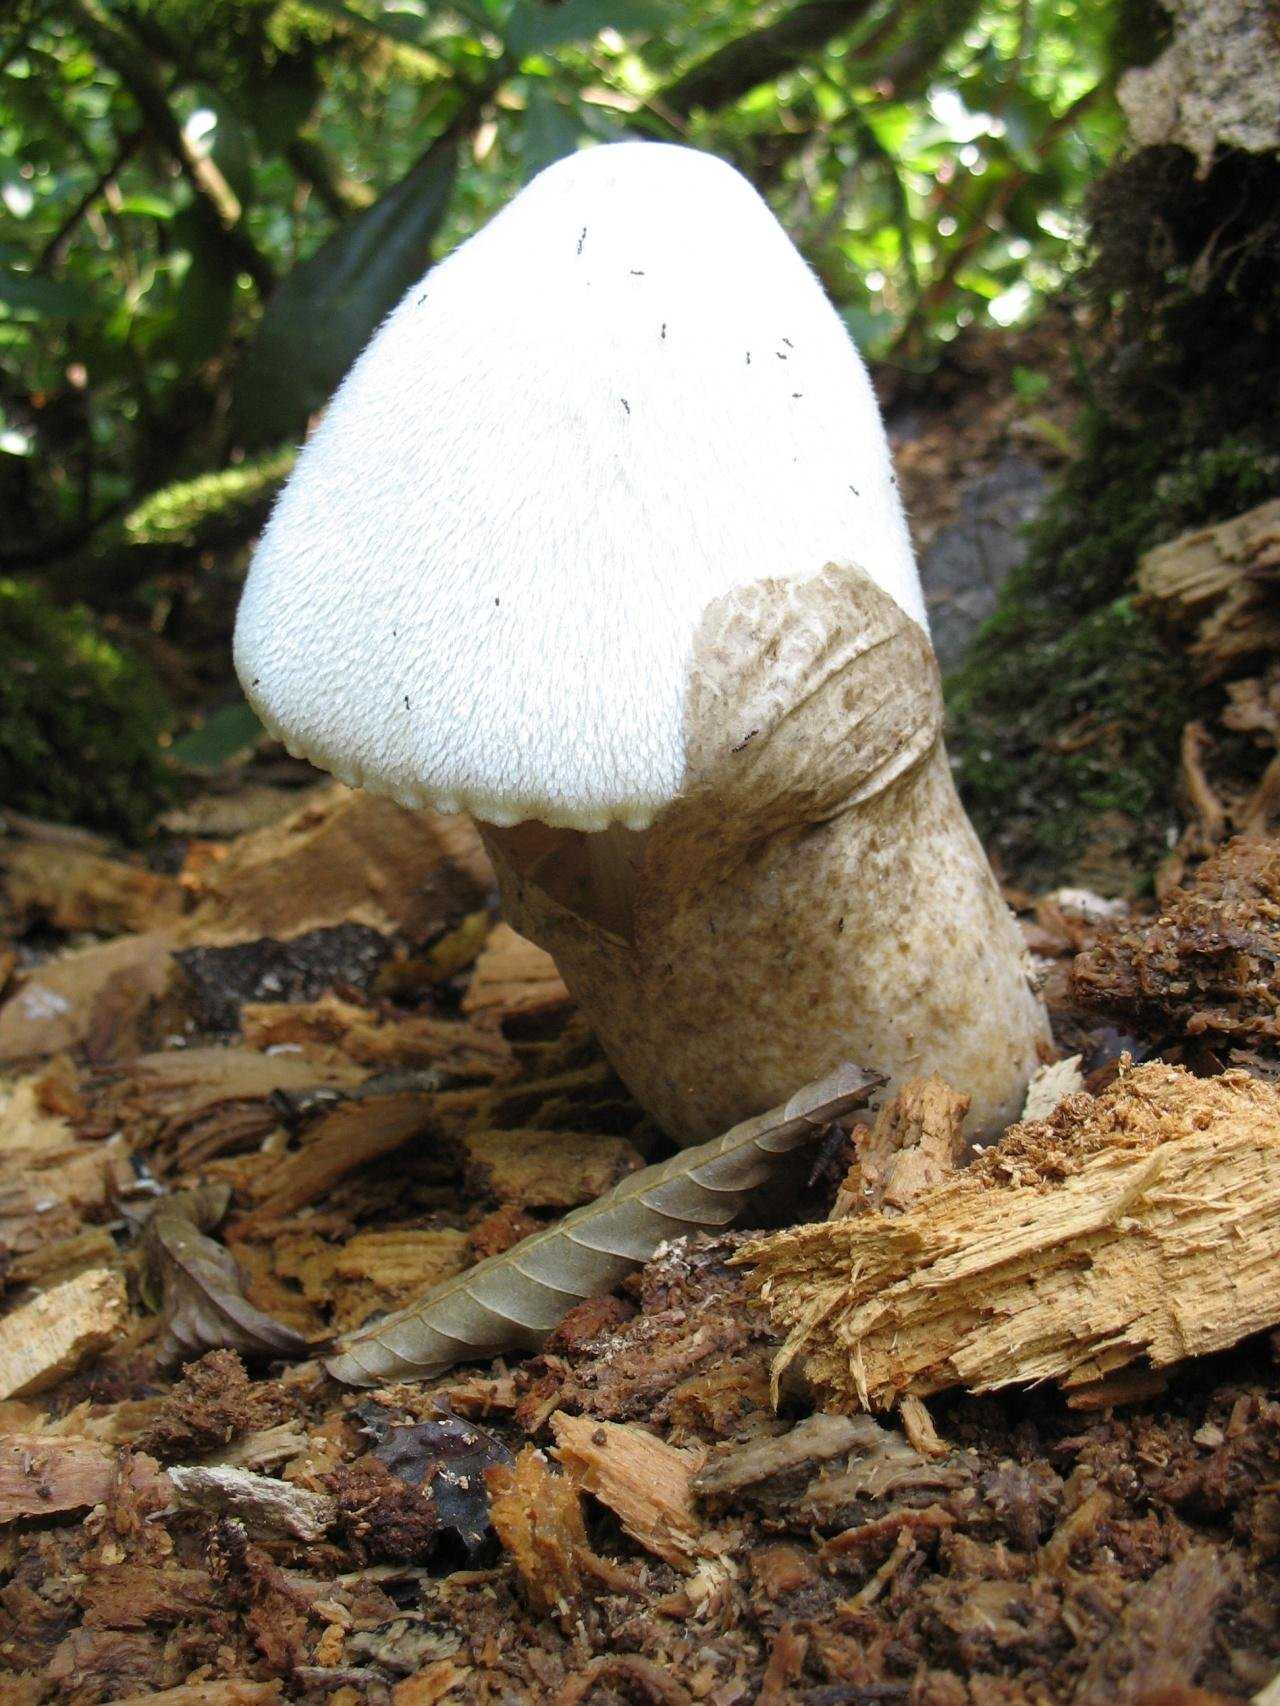 Вольвариелла слизистоголовая: описание гриба, фото, виды — викигриб